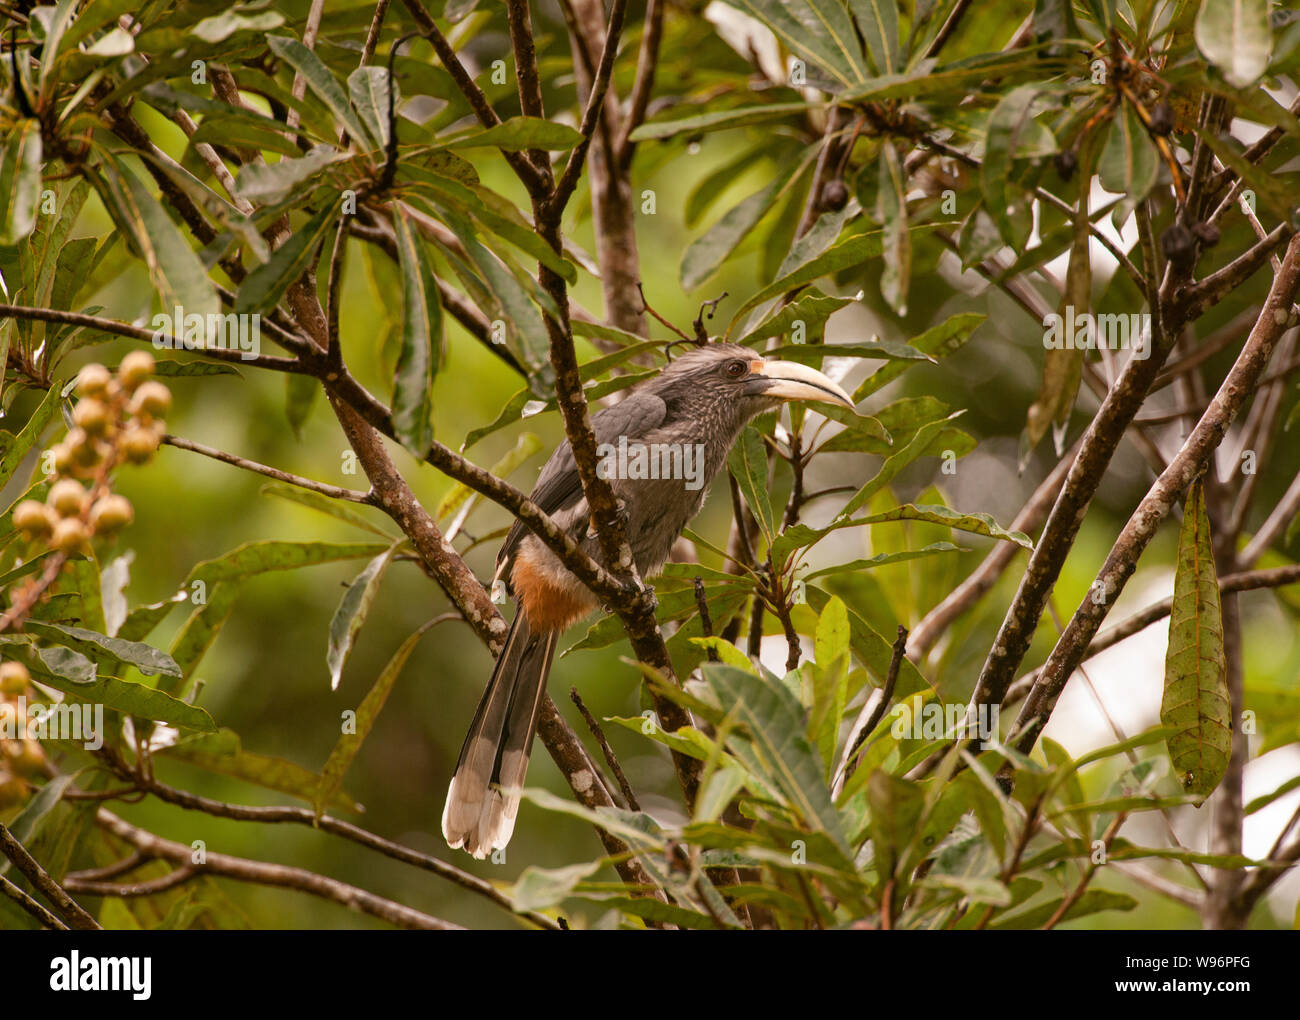 Malabar adultes Calao, Gris Ocyceros griseus, perché sur branche, endémique de Western Ghats, Dr Salim Ali Bird Sanctuary, Kerala, Inde Banque D'Images